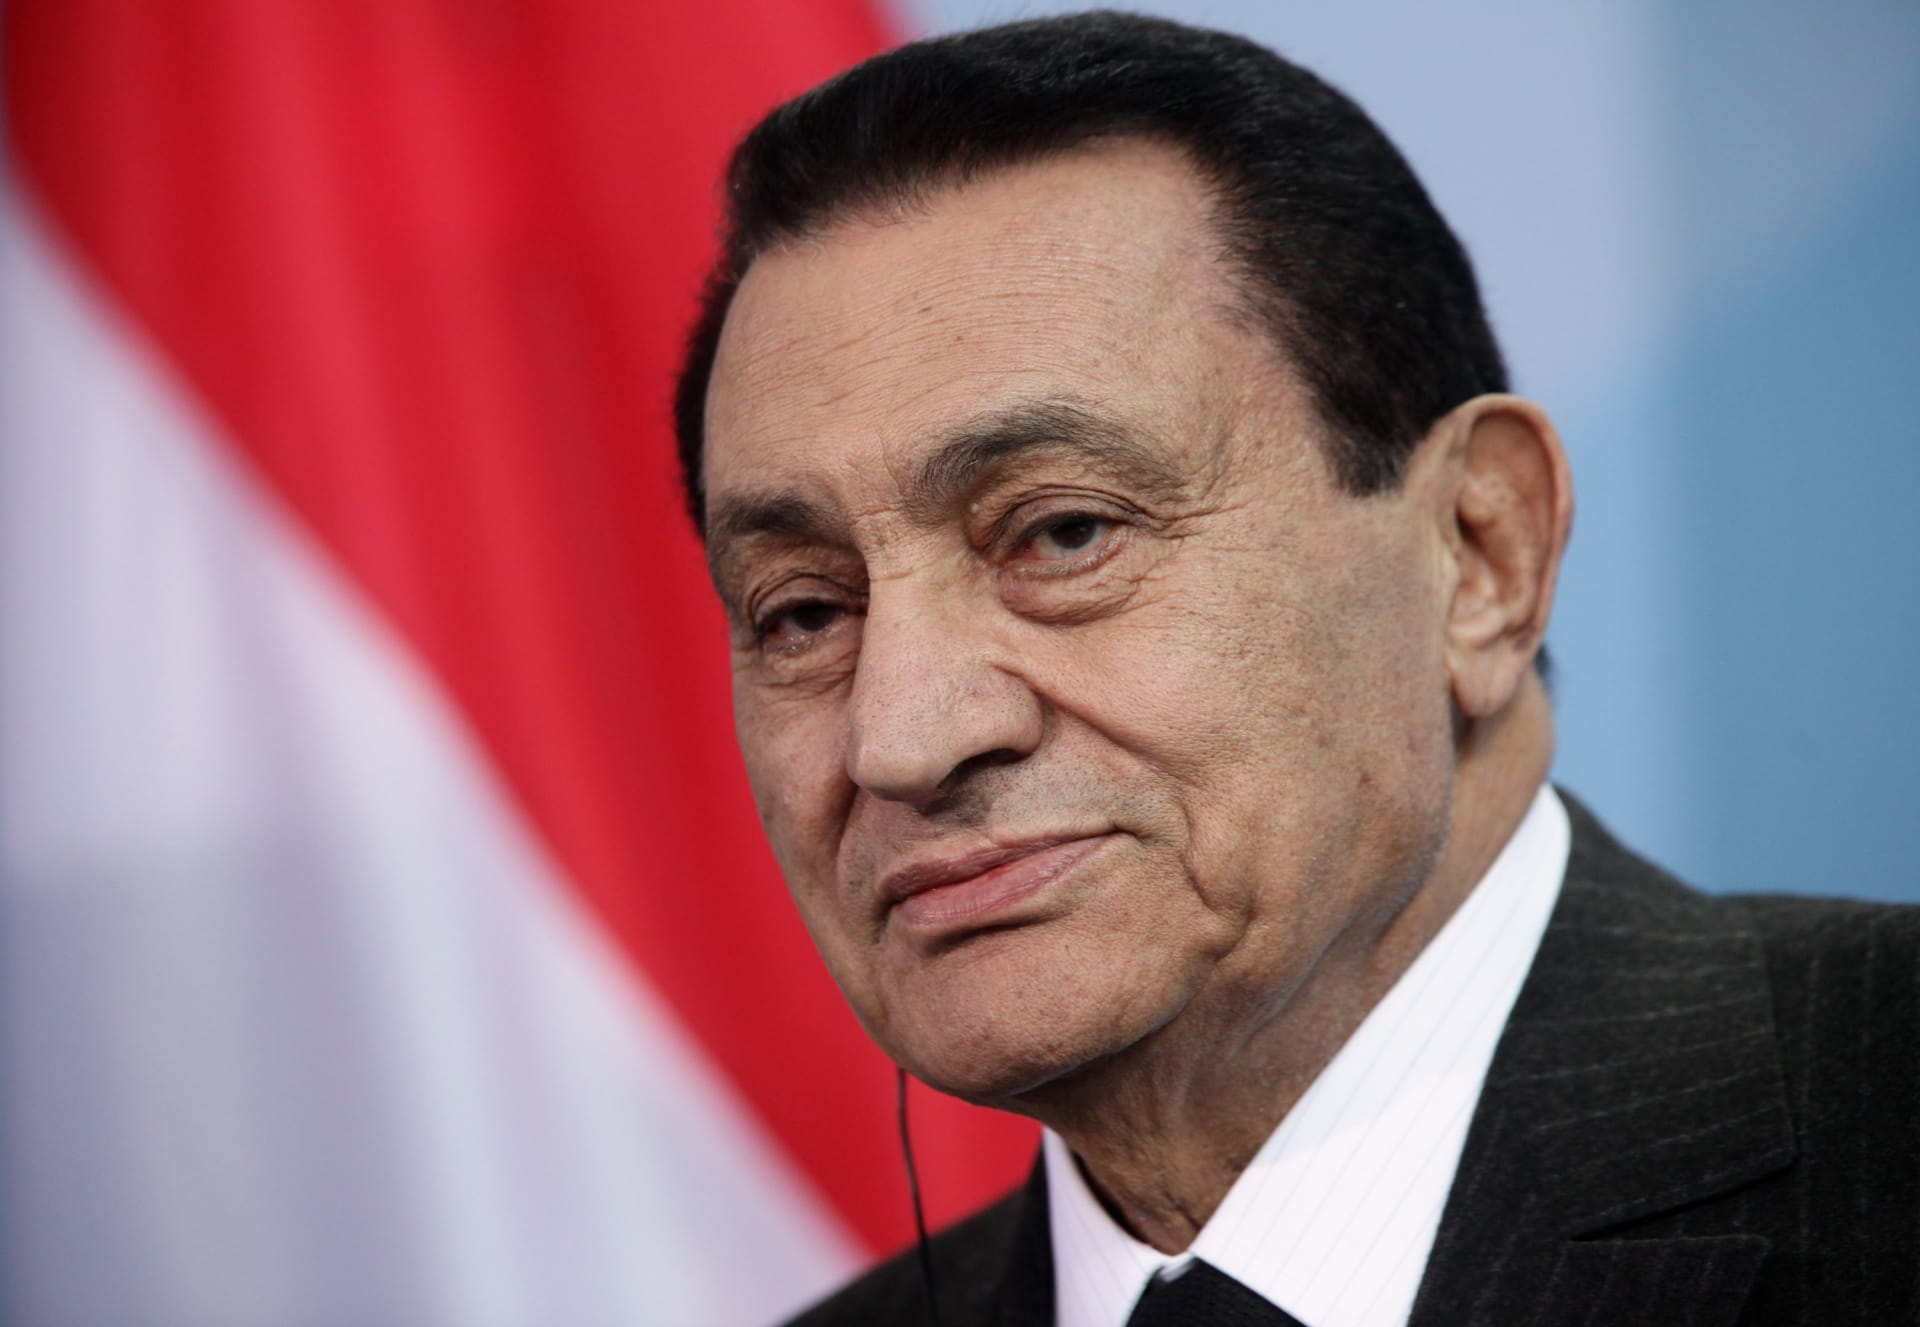 علاء مبارك يُجيب على سؤال حول السماح لـ"الناس العاديين" بزيارة ضريح والده